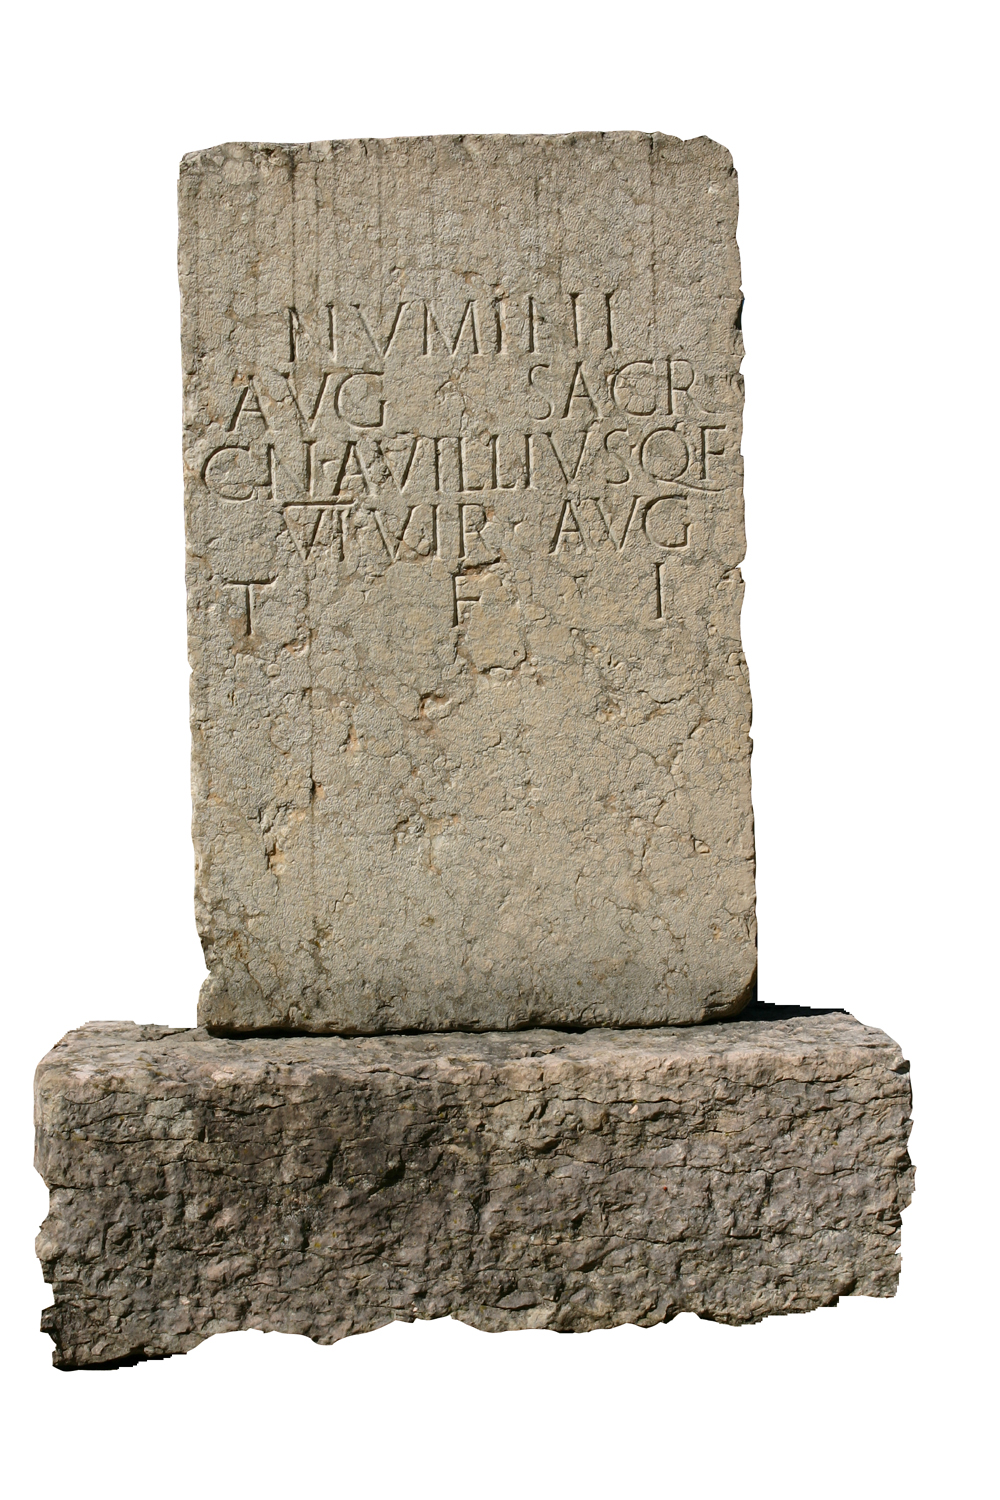 base di Cneo Avillio (cippo, monumento) - Lugagnano Val D'Arda (PC)  (prima metà I sec. d.C)